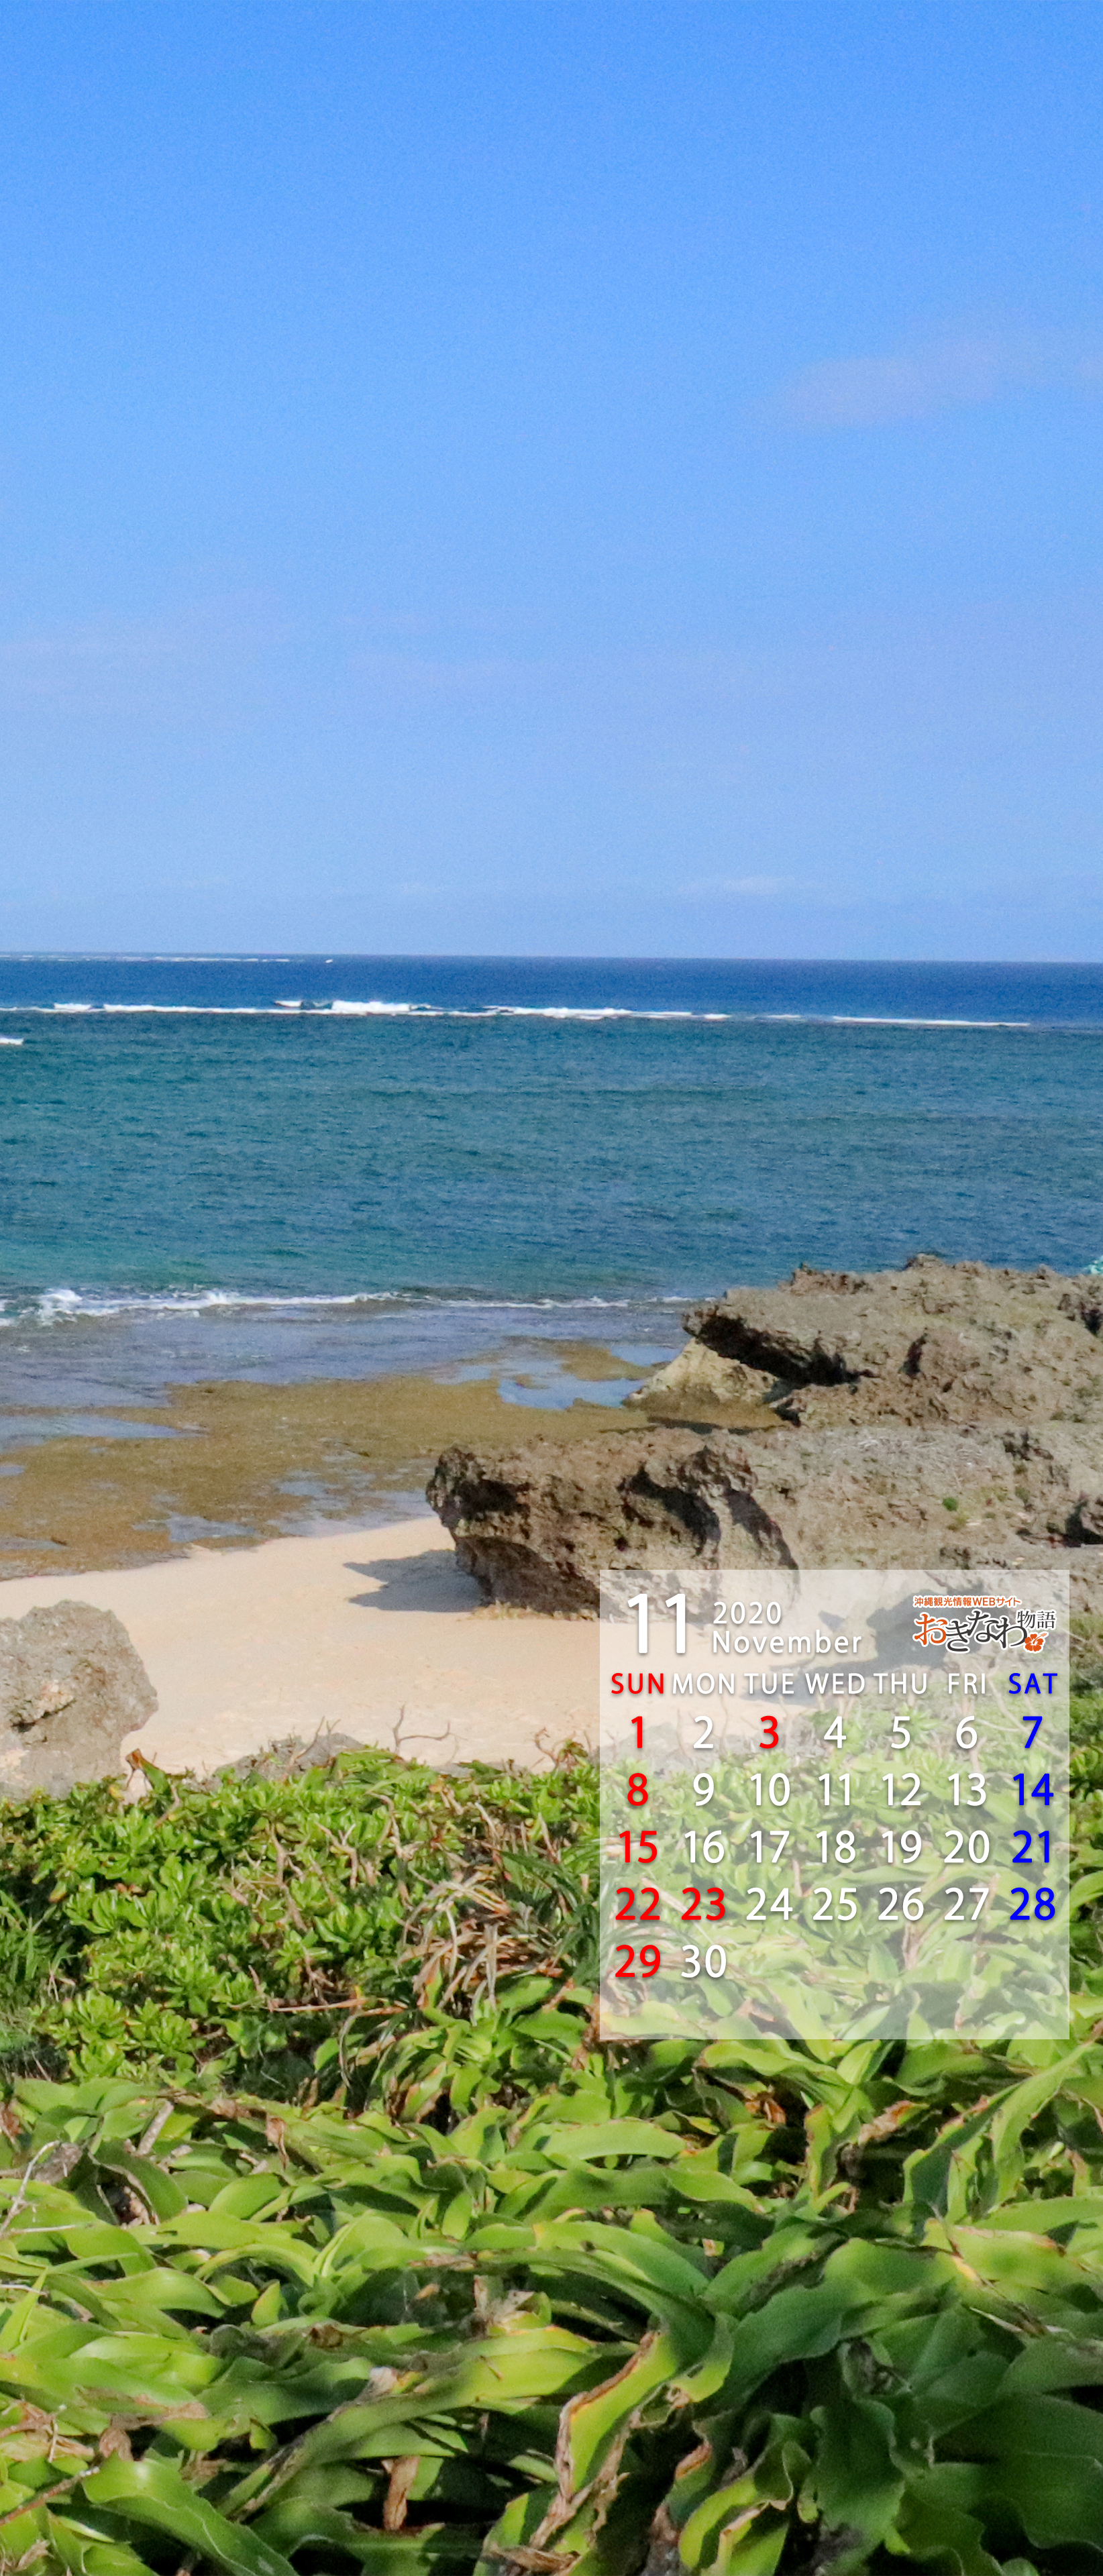 11月の壁紙カレンダー お知らせ トピックス 沖縄観光情報webサイト おきなわ物語